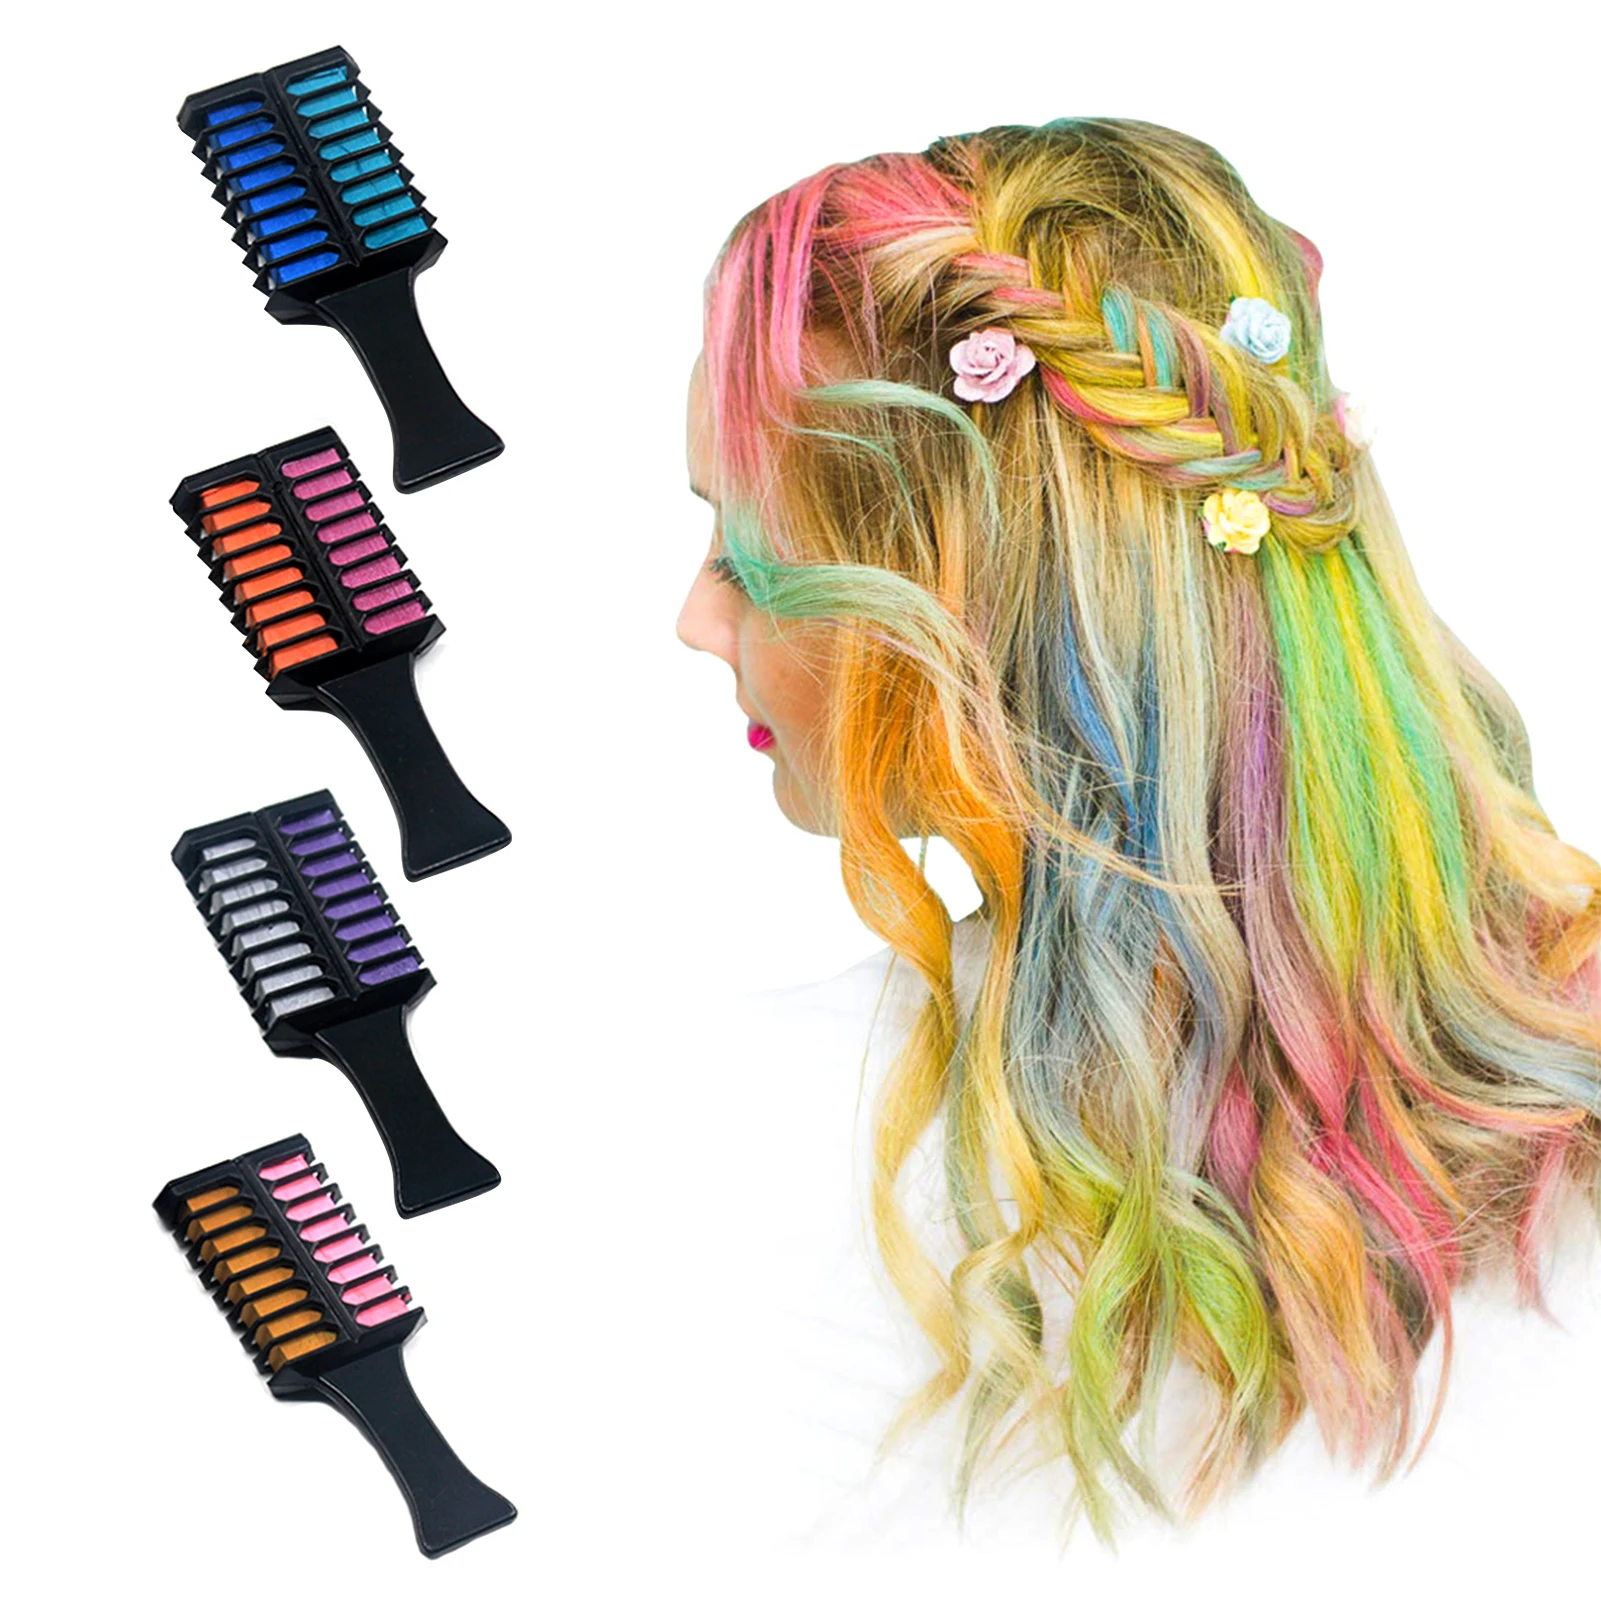 

Мелки для волос 10 цветов, набор матовых цветов, временная Одноразовая расческа для окрашивания волос, модная и цветная Временная расческа д...